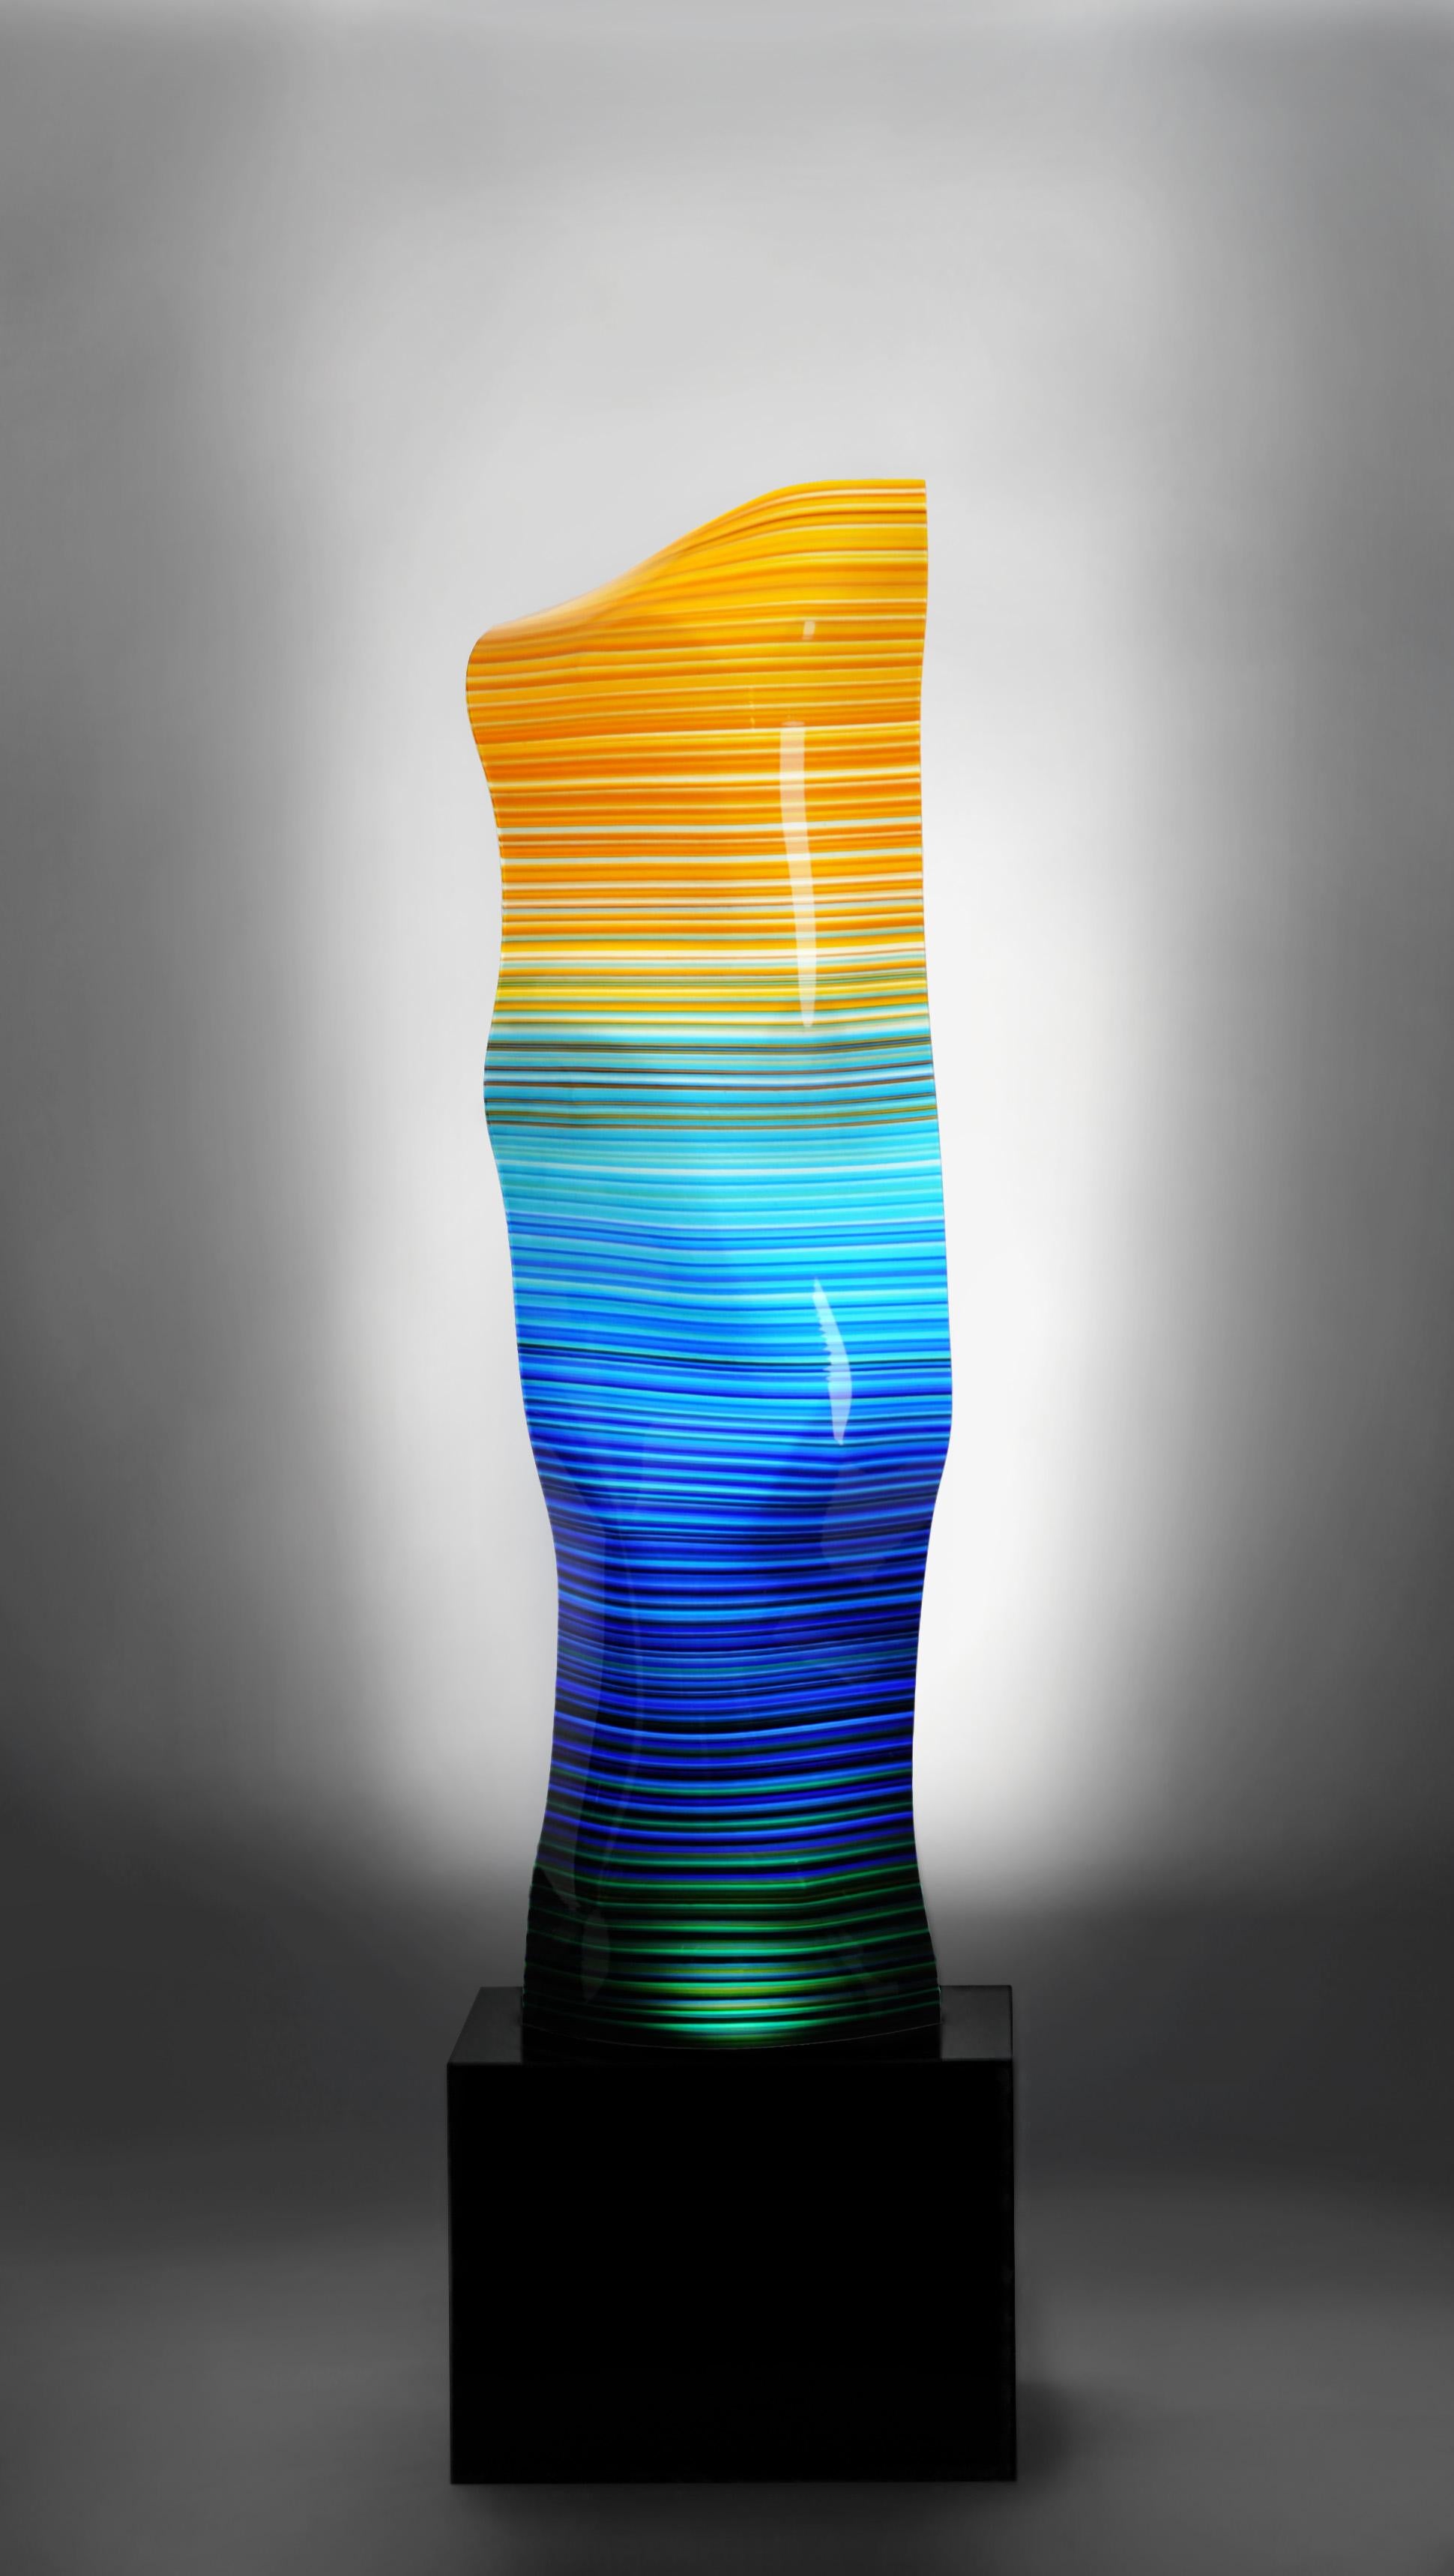 Barcodelampe mit Granitsockel.
Dieses Stück aus geschmolzenem Glas gehört zu der von Orfeo Quagliata entworfenen Kollektion Barcode Magikarpet. Exklusive Techniken des Künstlers. 100% handgefertigt mit hochwertigstem Material.
Dieses elegante